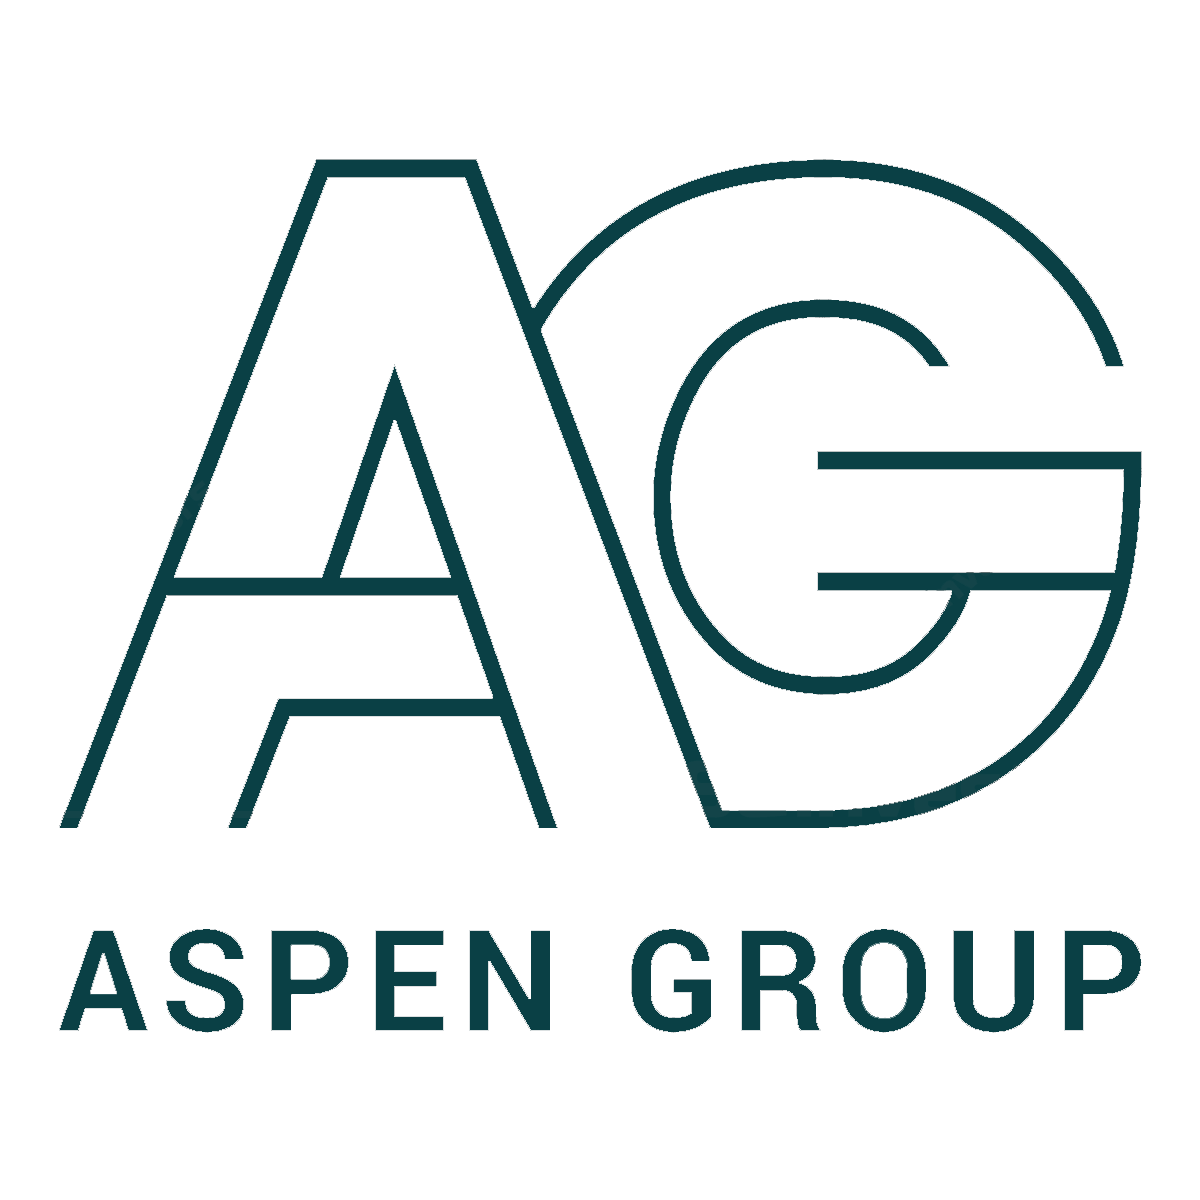 Aspen Group (1)